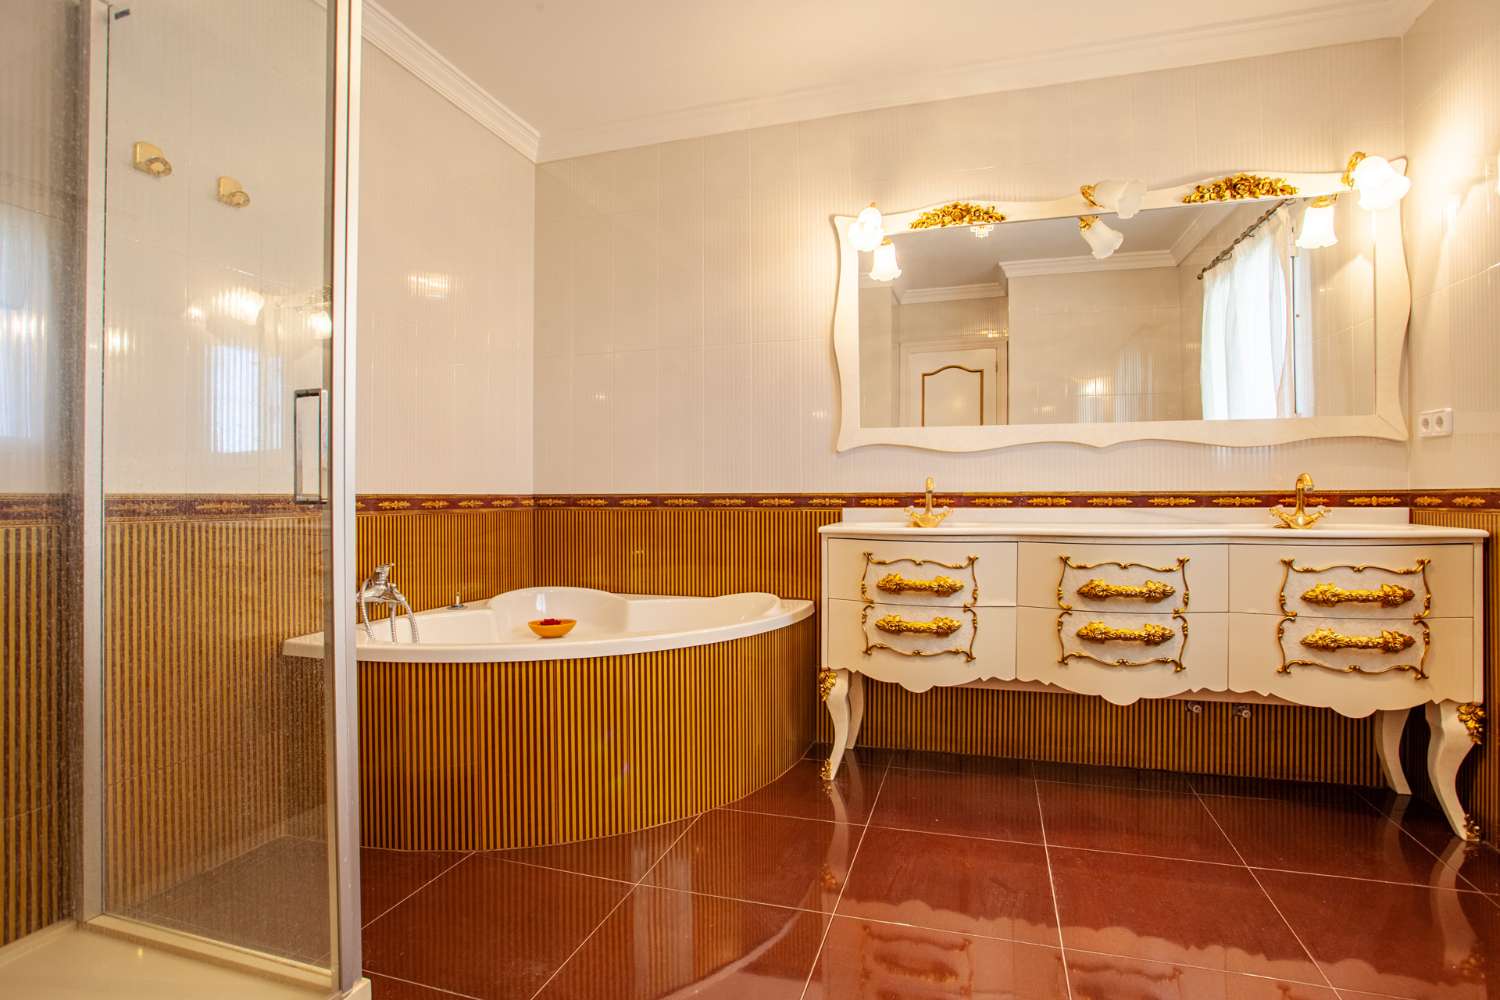 Højtstående, luksusvilla i et af de mest prestigefyldte områder på Costa Blanca.